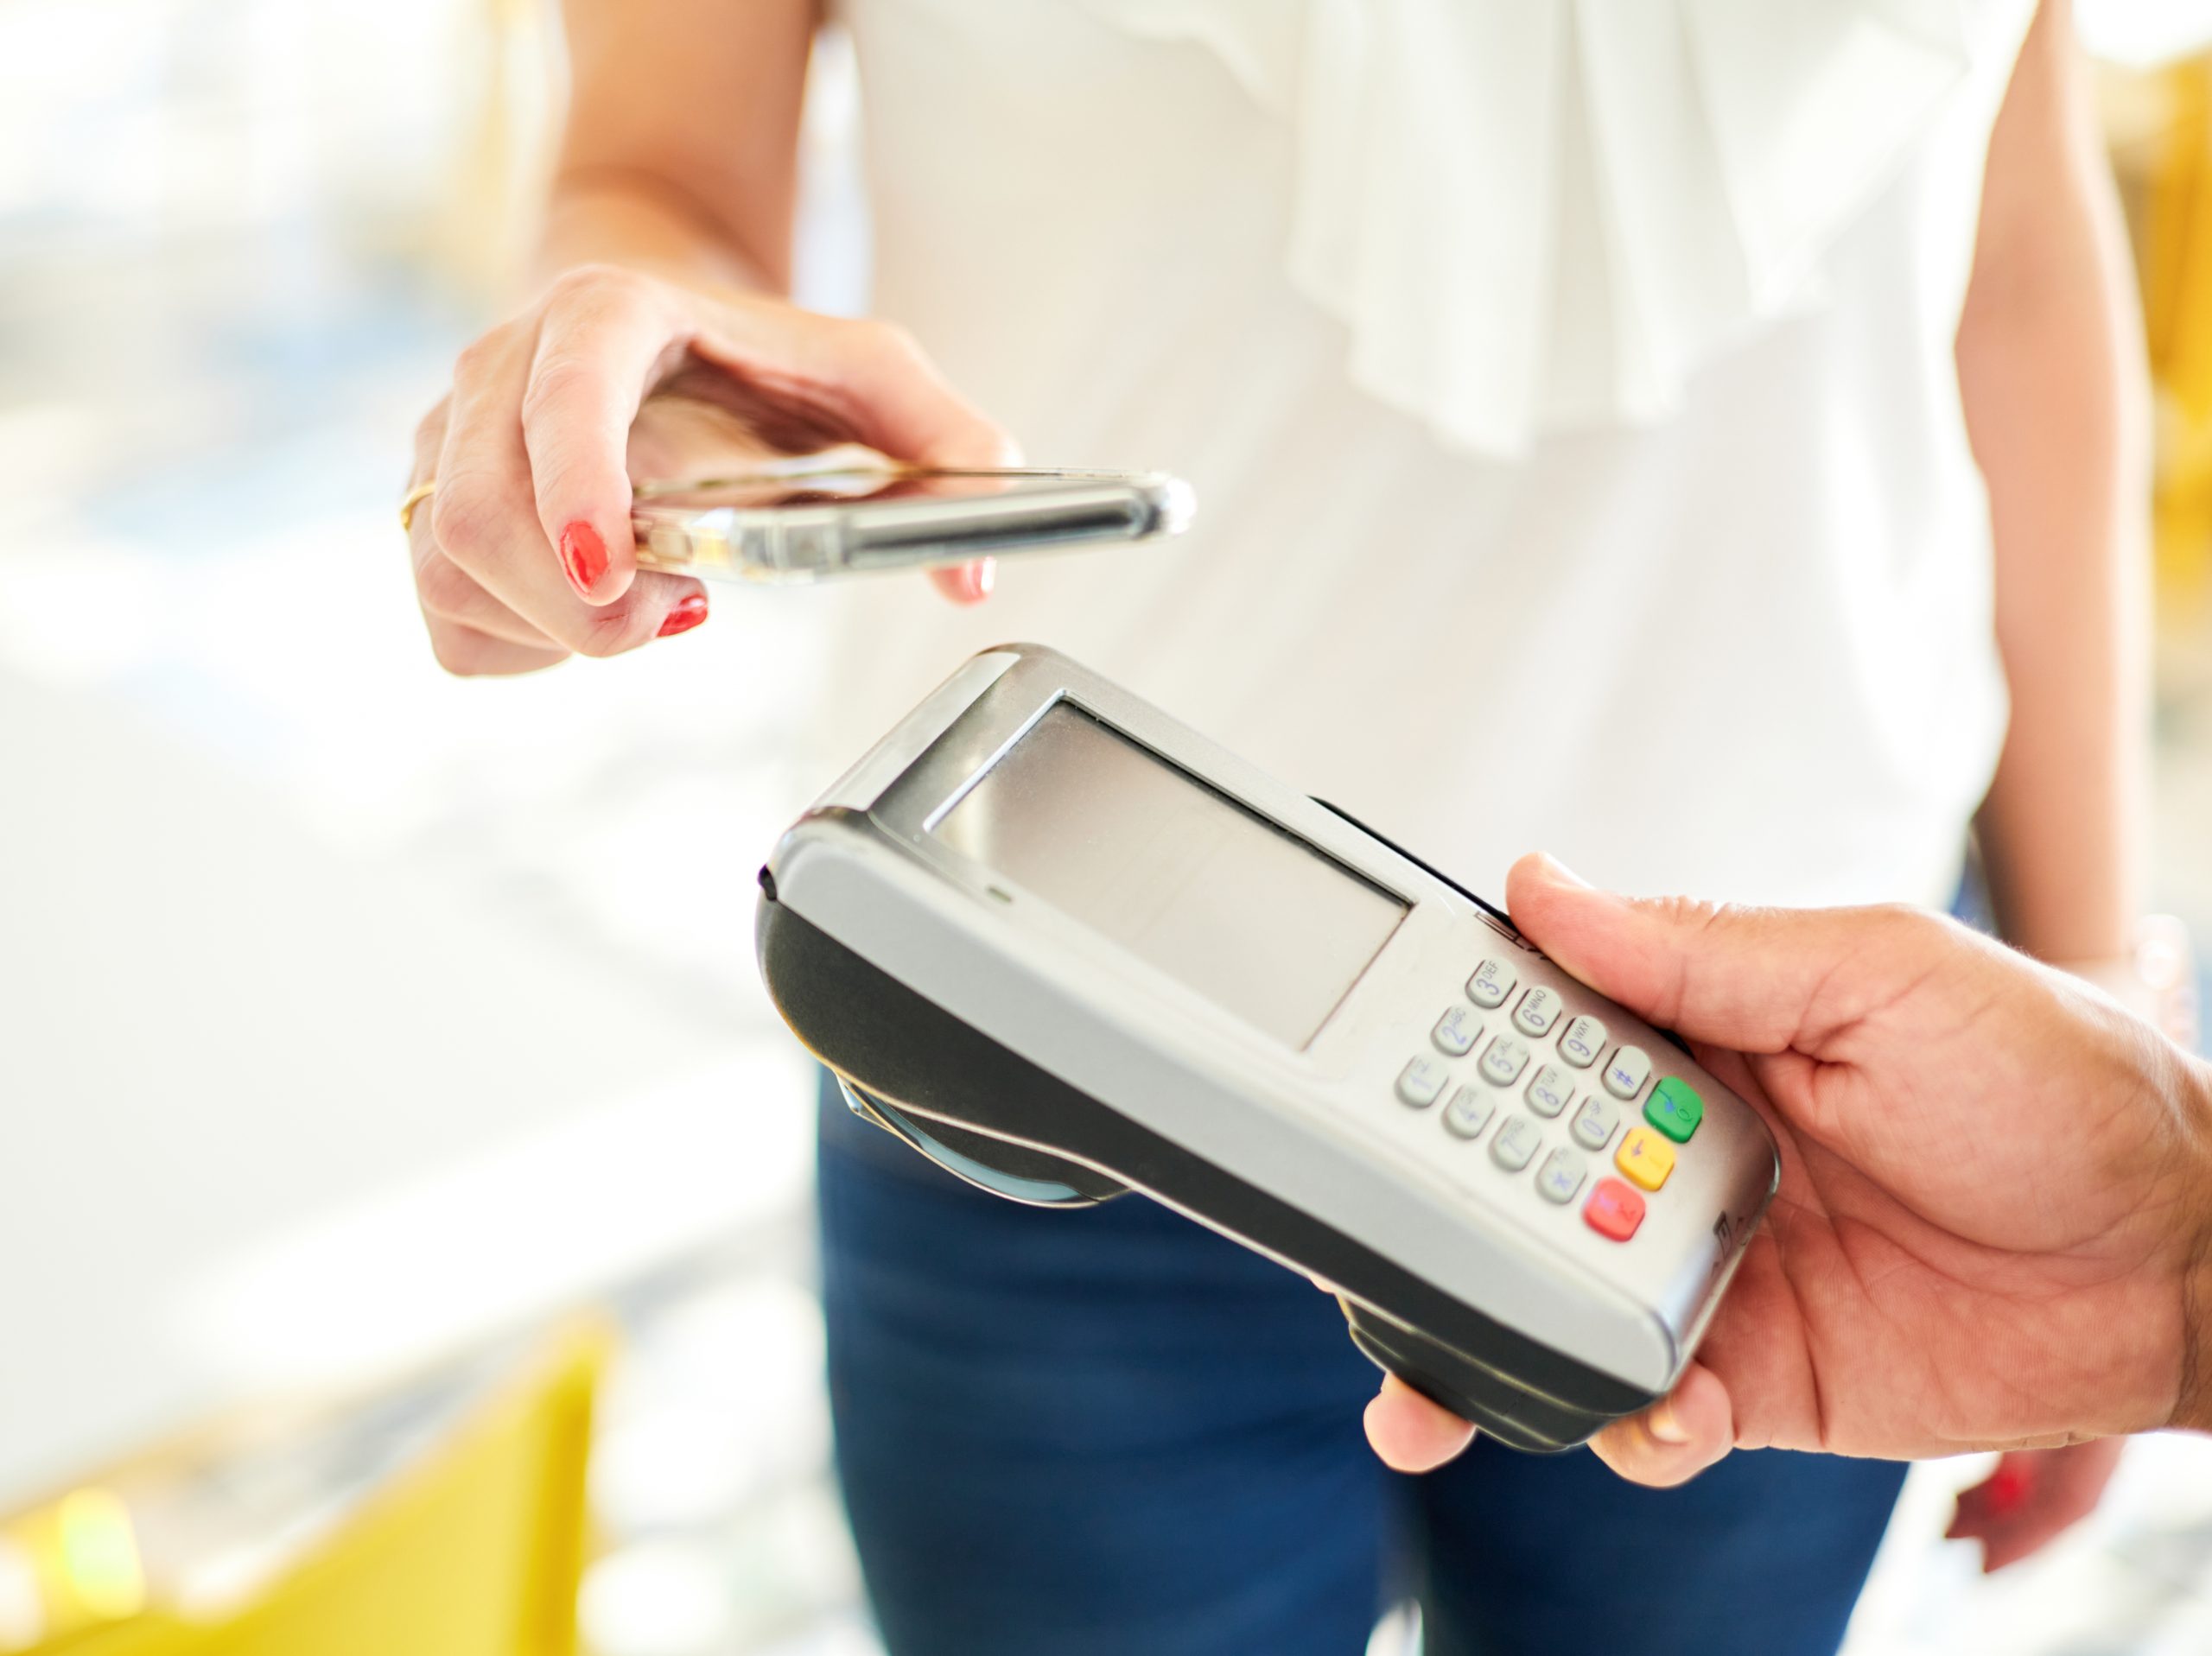 Beneficios de TicketBAI y facturación digital